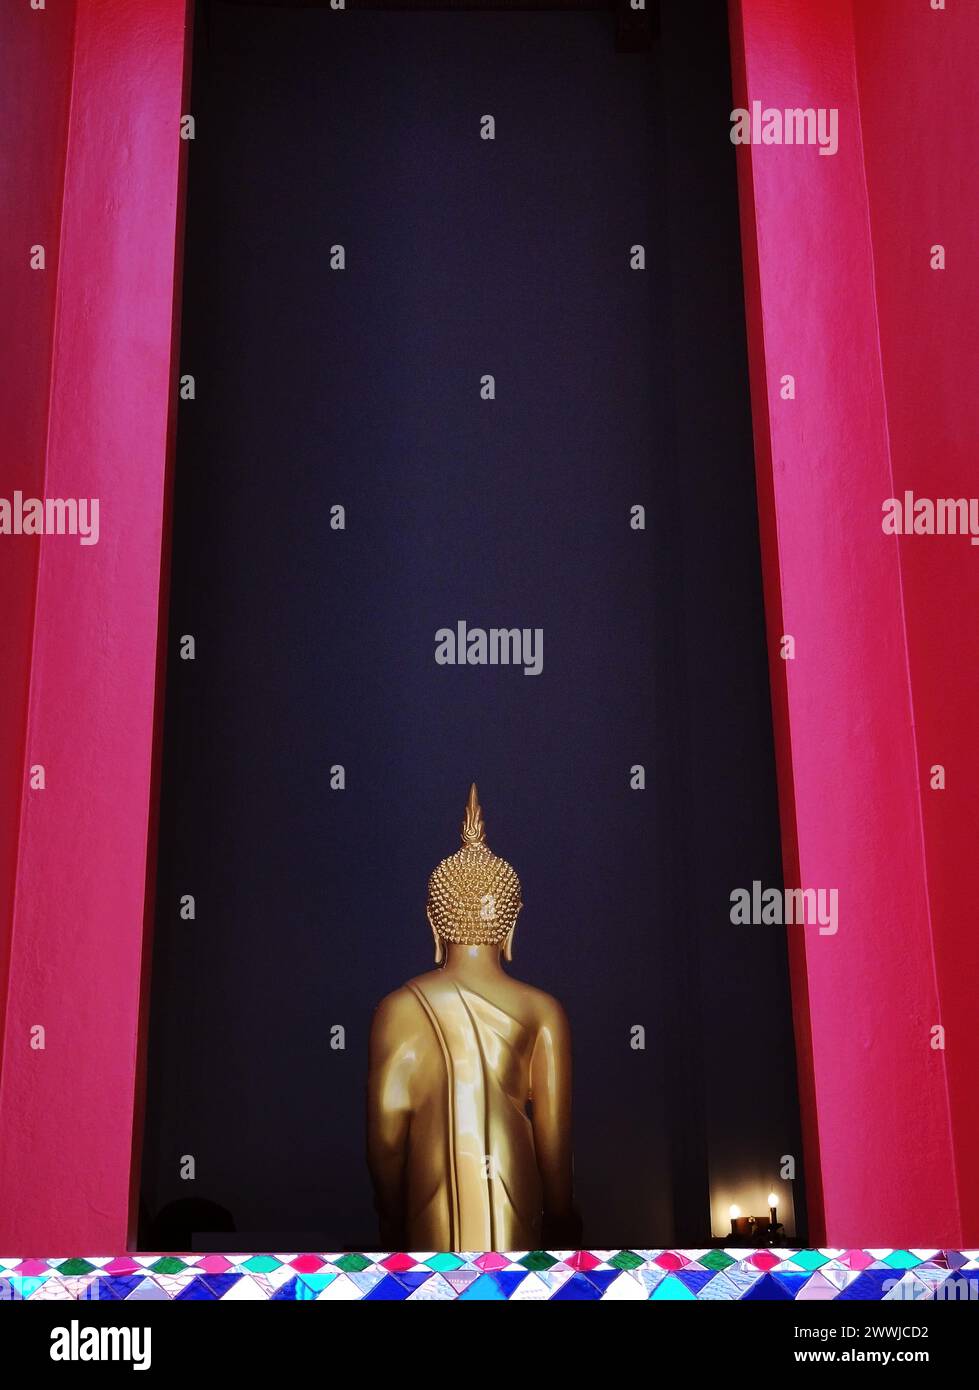 Vue de l'arrière de la sculpture de statue de Bouddha dorée dans le temple thaïlandais avec fenêtre à cadre en bois de couleur rouge, architecture et culture thaïlandaises Banque D'Images